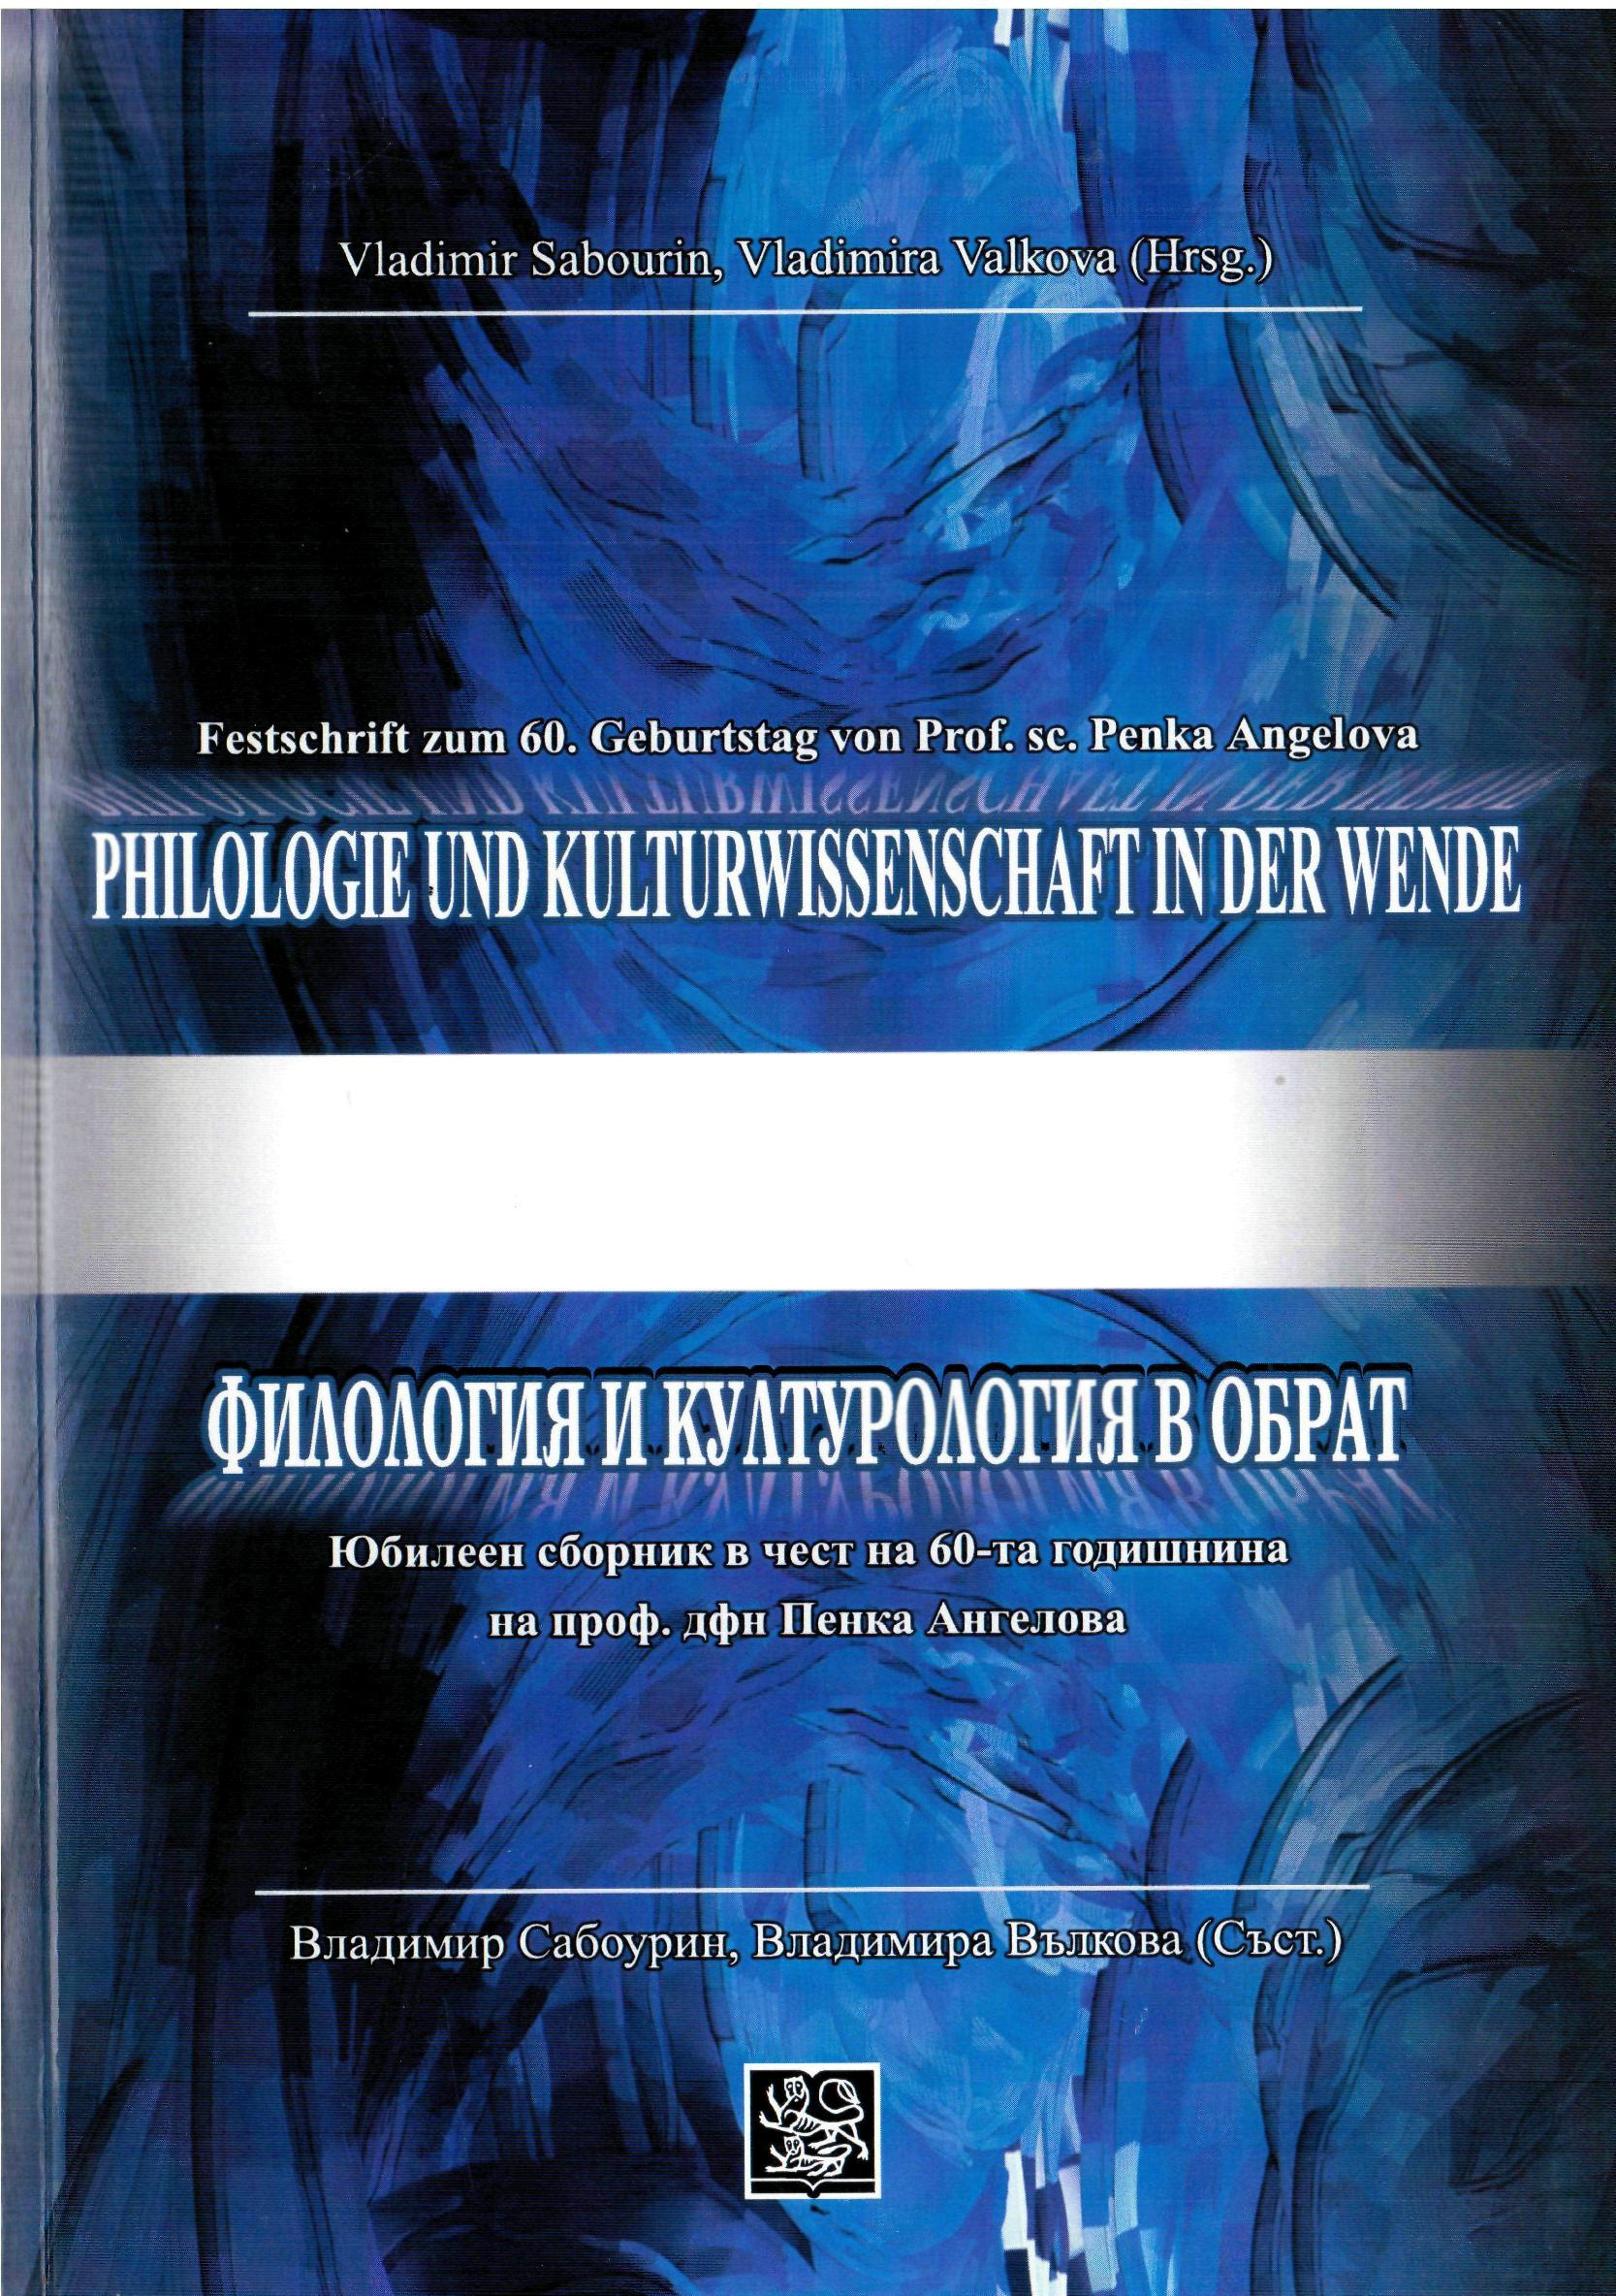 Philologie und Kulturwissenschaft in der Wende. Festschrift zum Geburtstag von Prof. sc. Penka Angelova